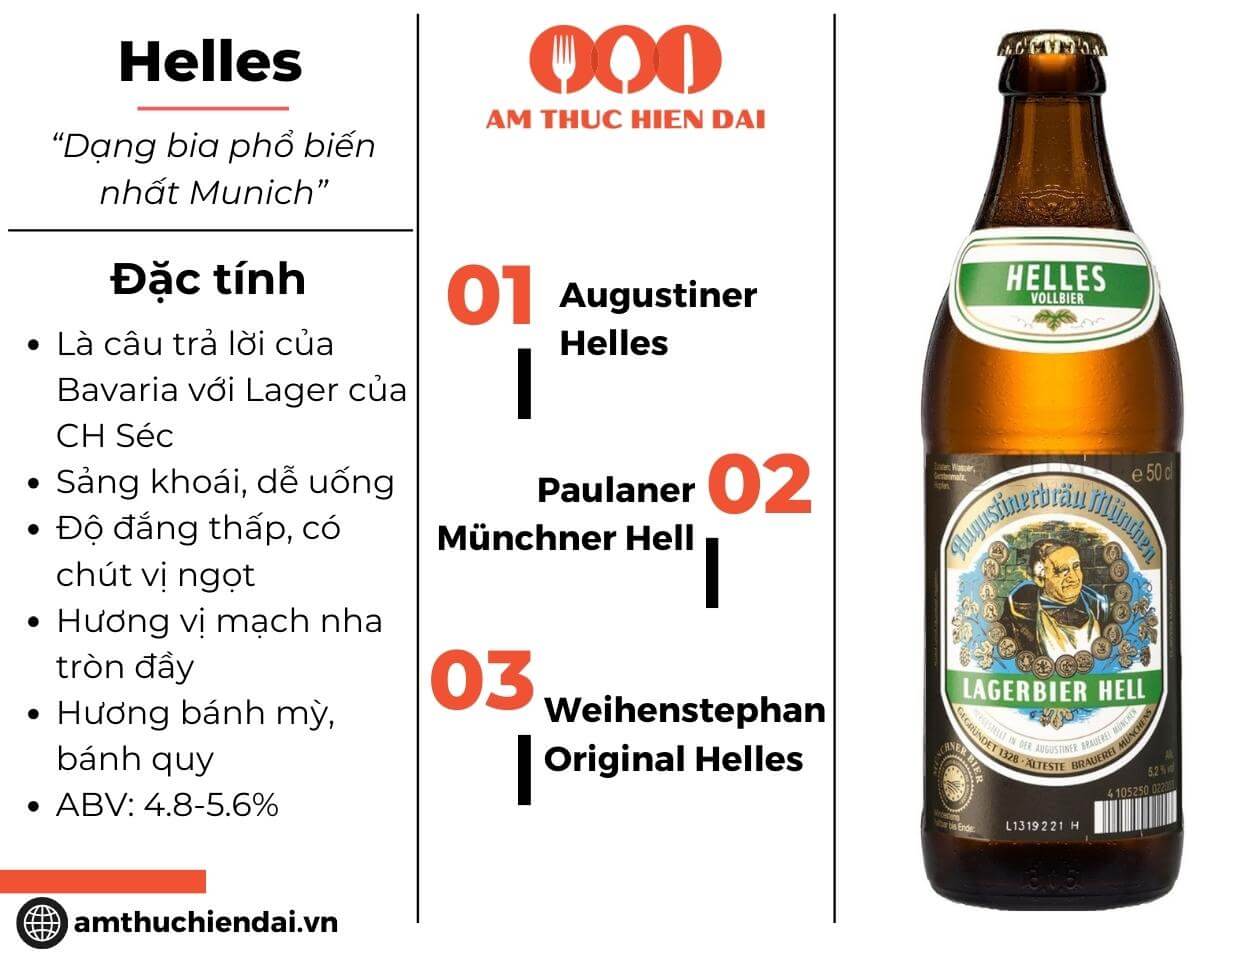 Helles Beers